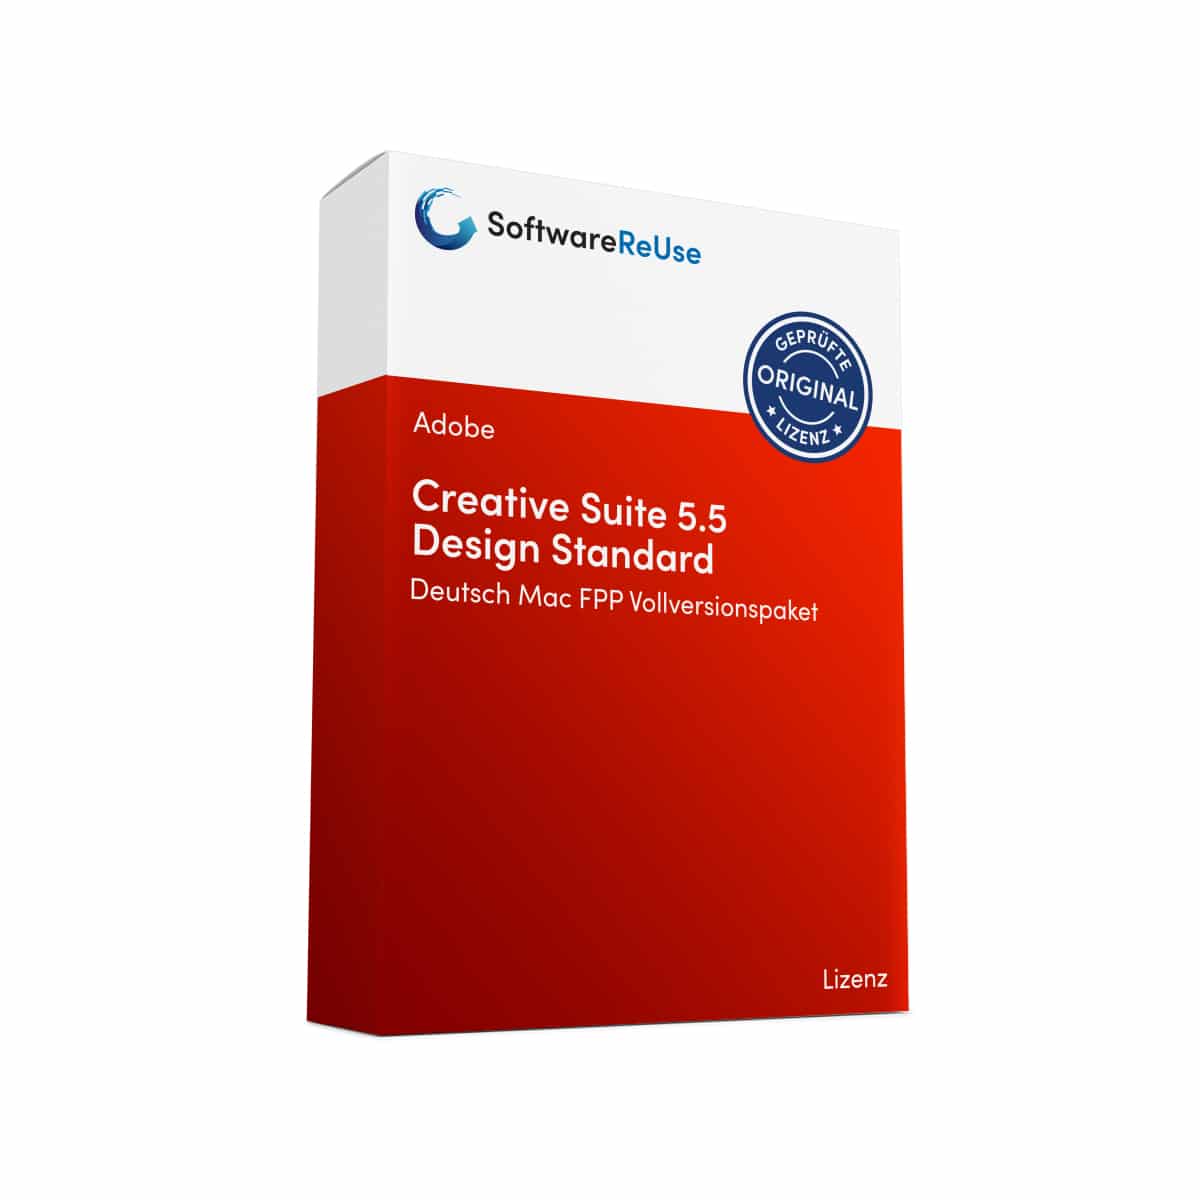 Creative Suite 5.5 Design Standard FPP Vollversionspaket – DE